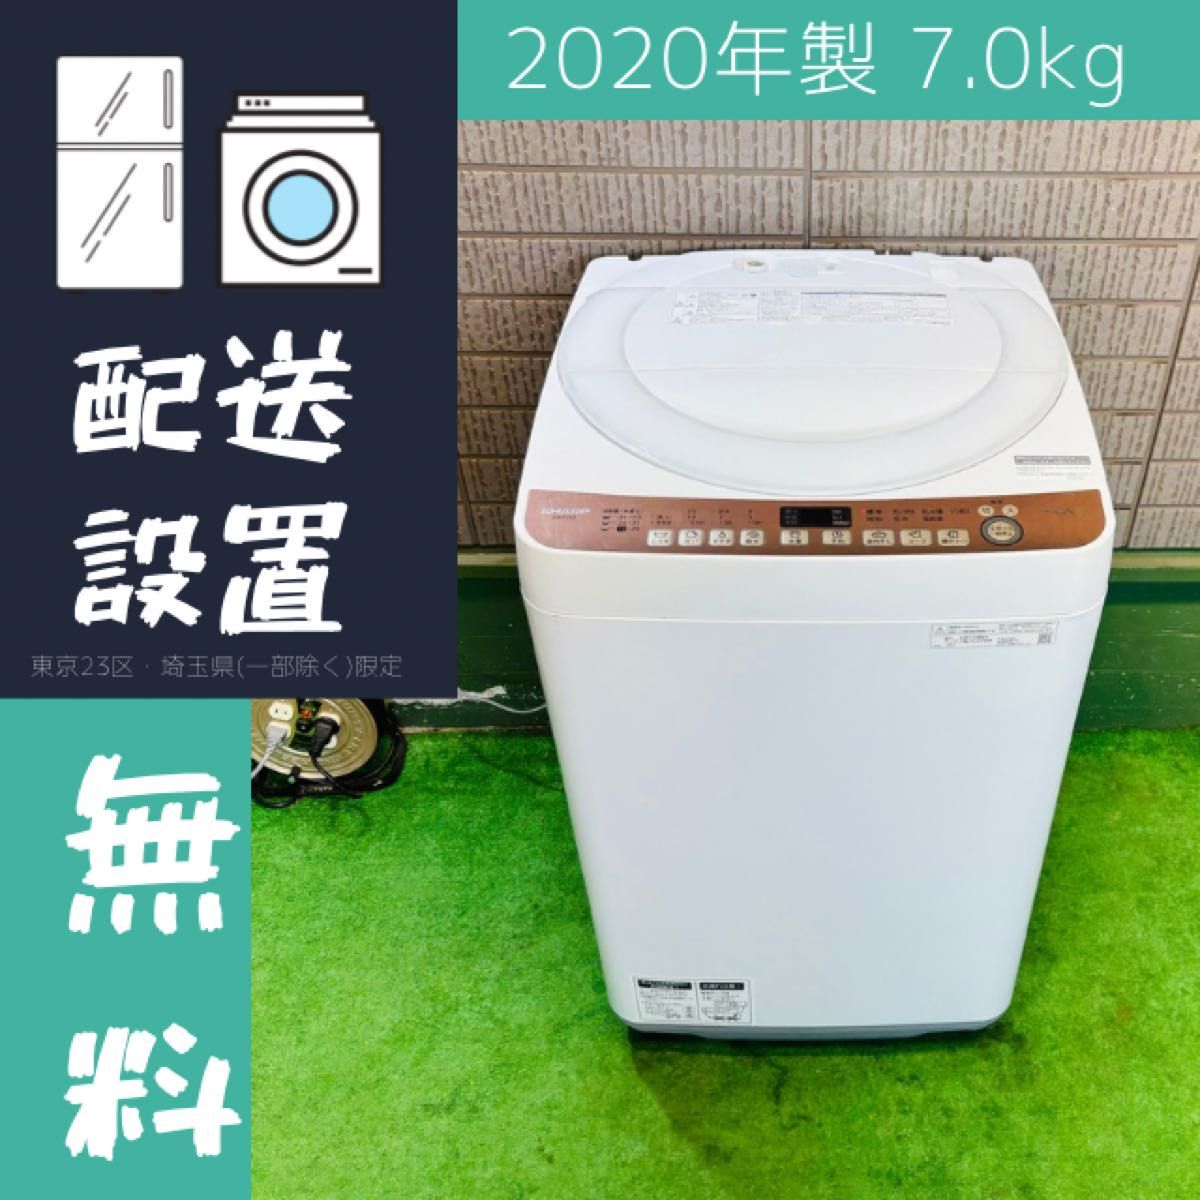 2020年製 7.0kg 洗濯機 大容量 SHARP【地域限定配送無料】